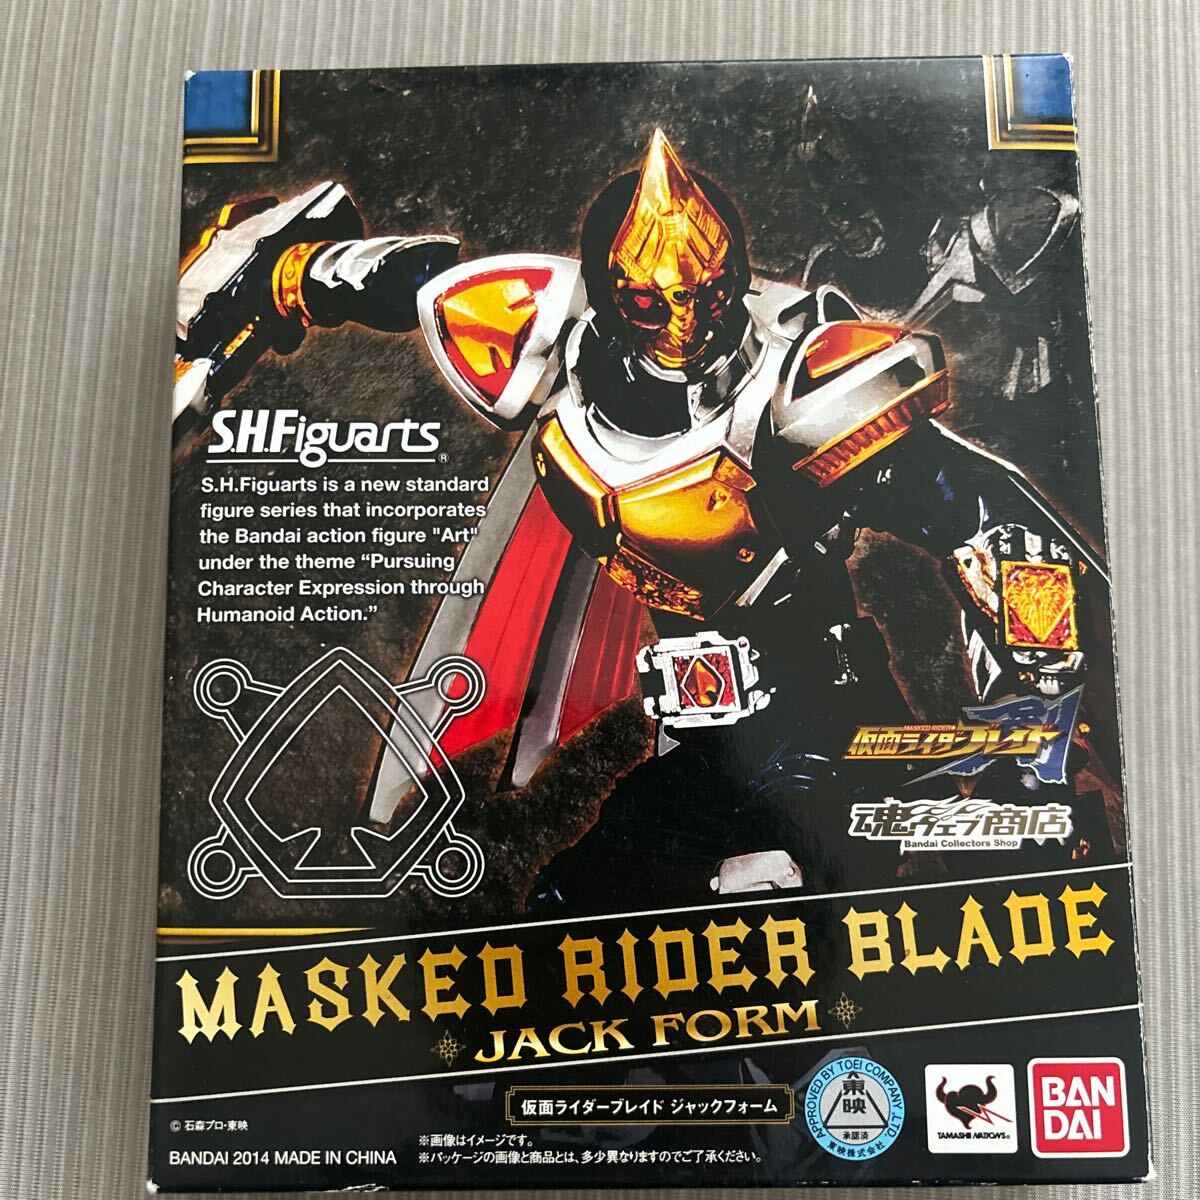  стоимость доставки 410 иен premium Bandai ограничение sh figuarts Kamen Rider . Blade Jack пена S H Figuarts